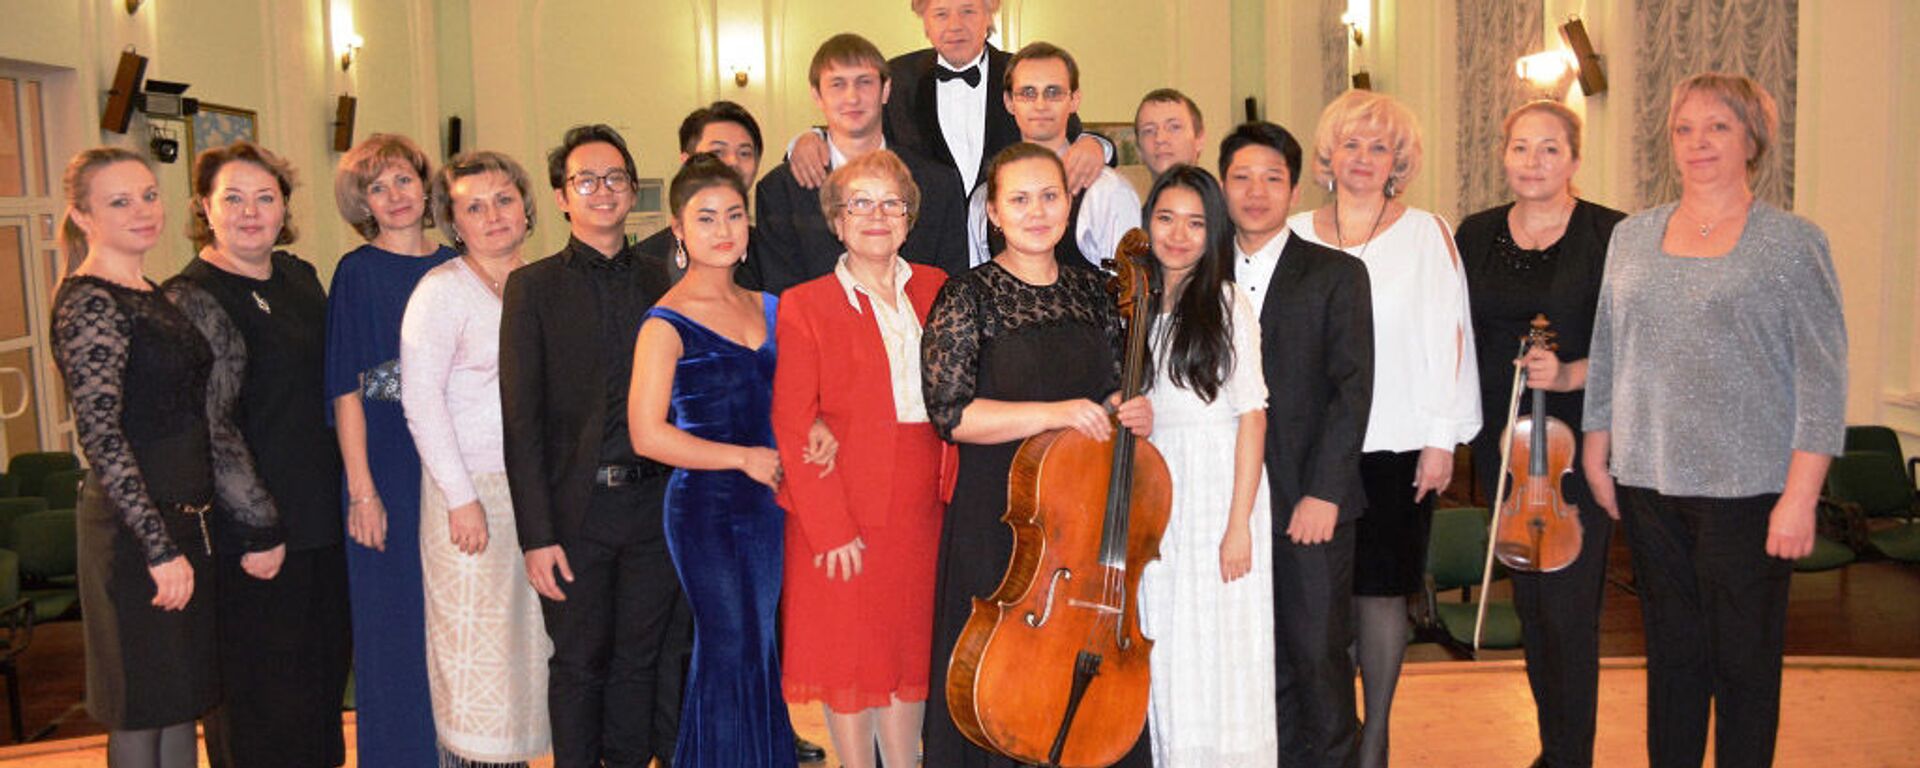 Ngày 20 tháng 12, tại hội trường Đại học tổng hợp quốc gia Kursk đã tổ chức buổi hòa nhạc của Khoa biểu diễn nhạc cụ. - Sputnik Việt Nam, 1920, 23.12.2016